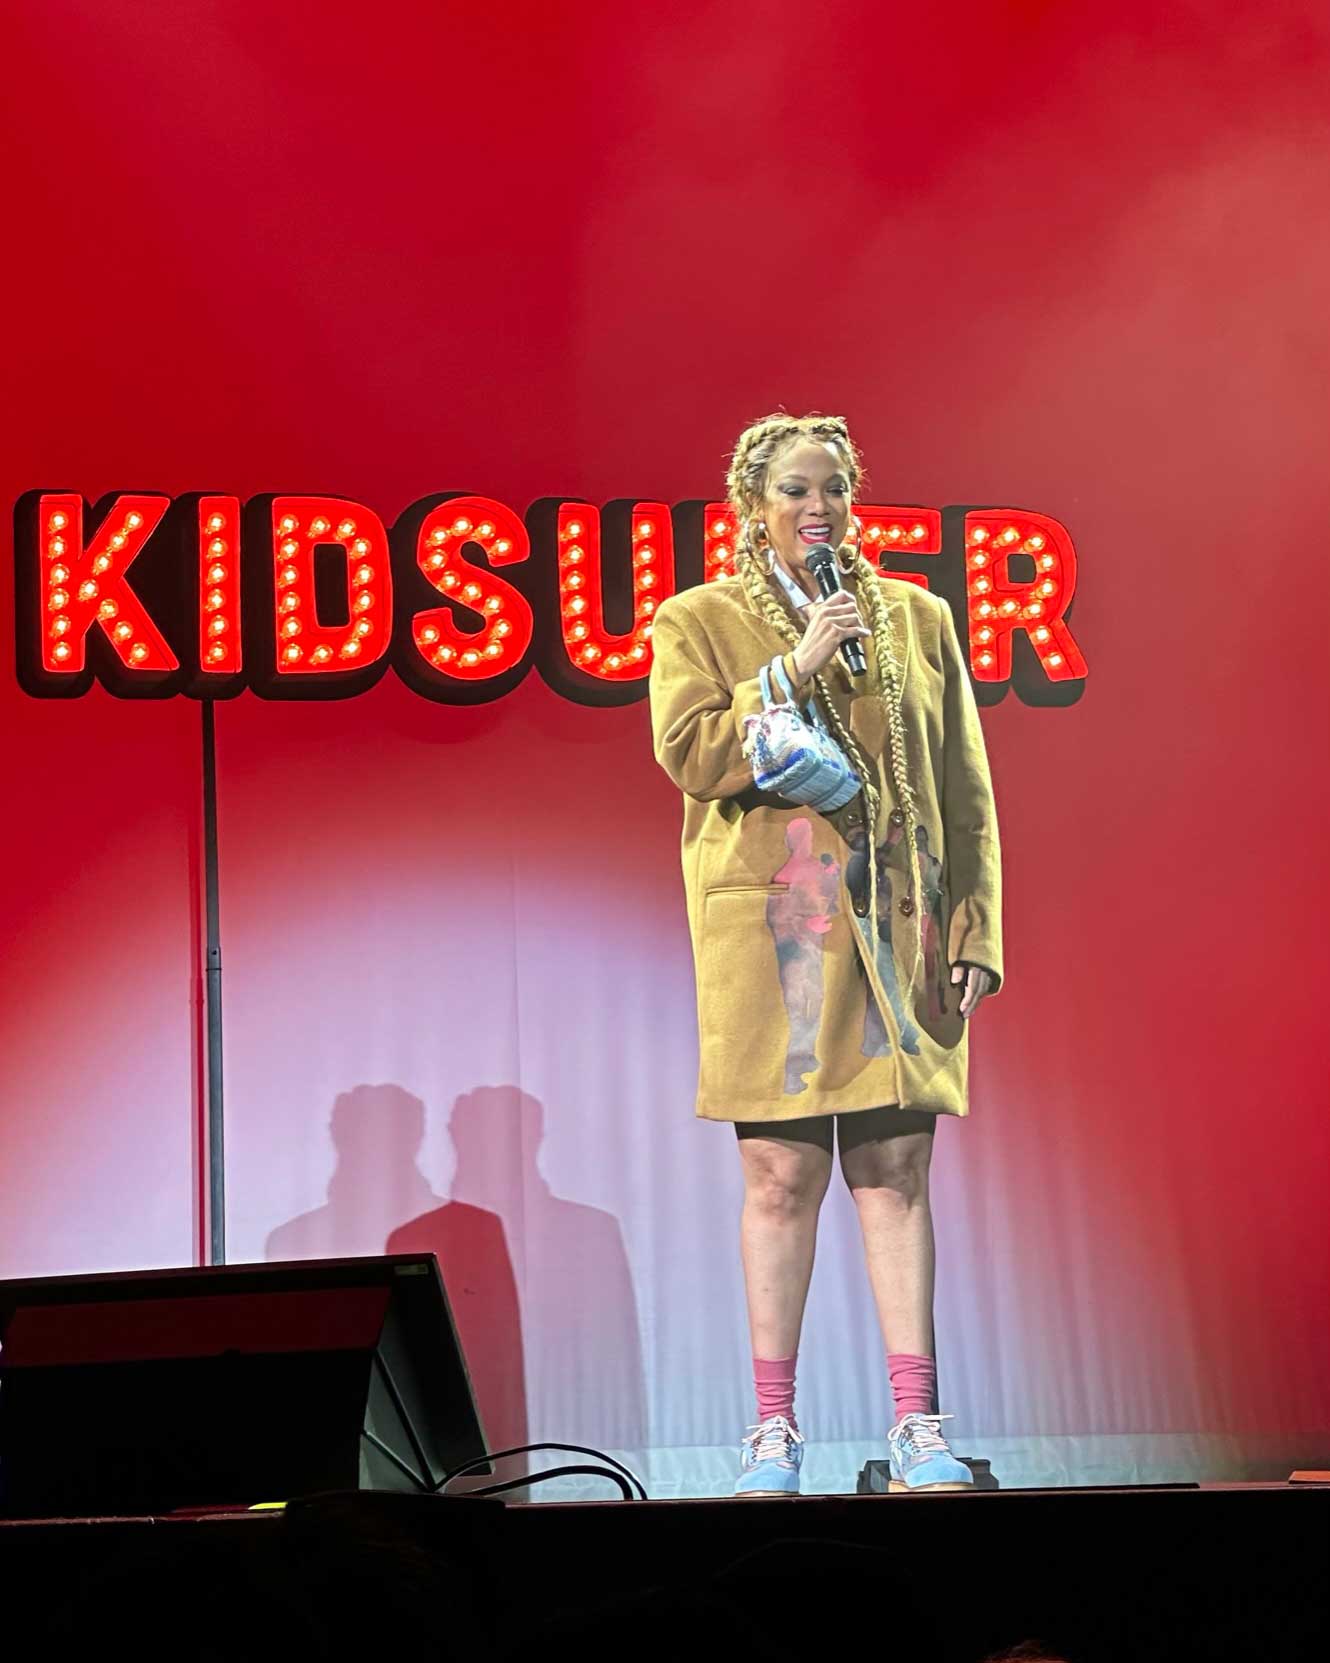 kidsuper comedy show